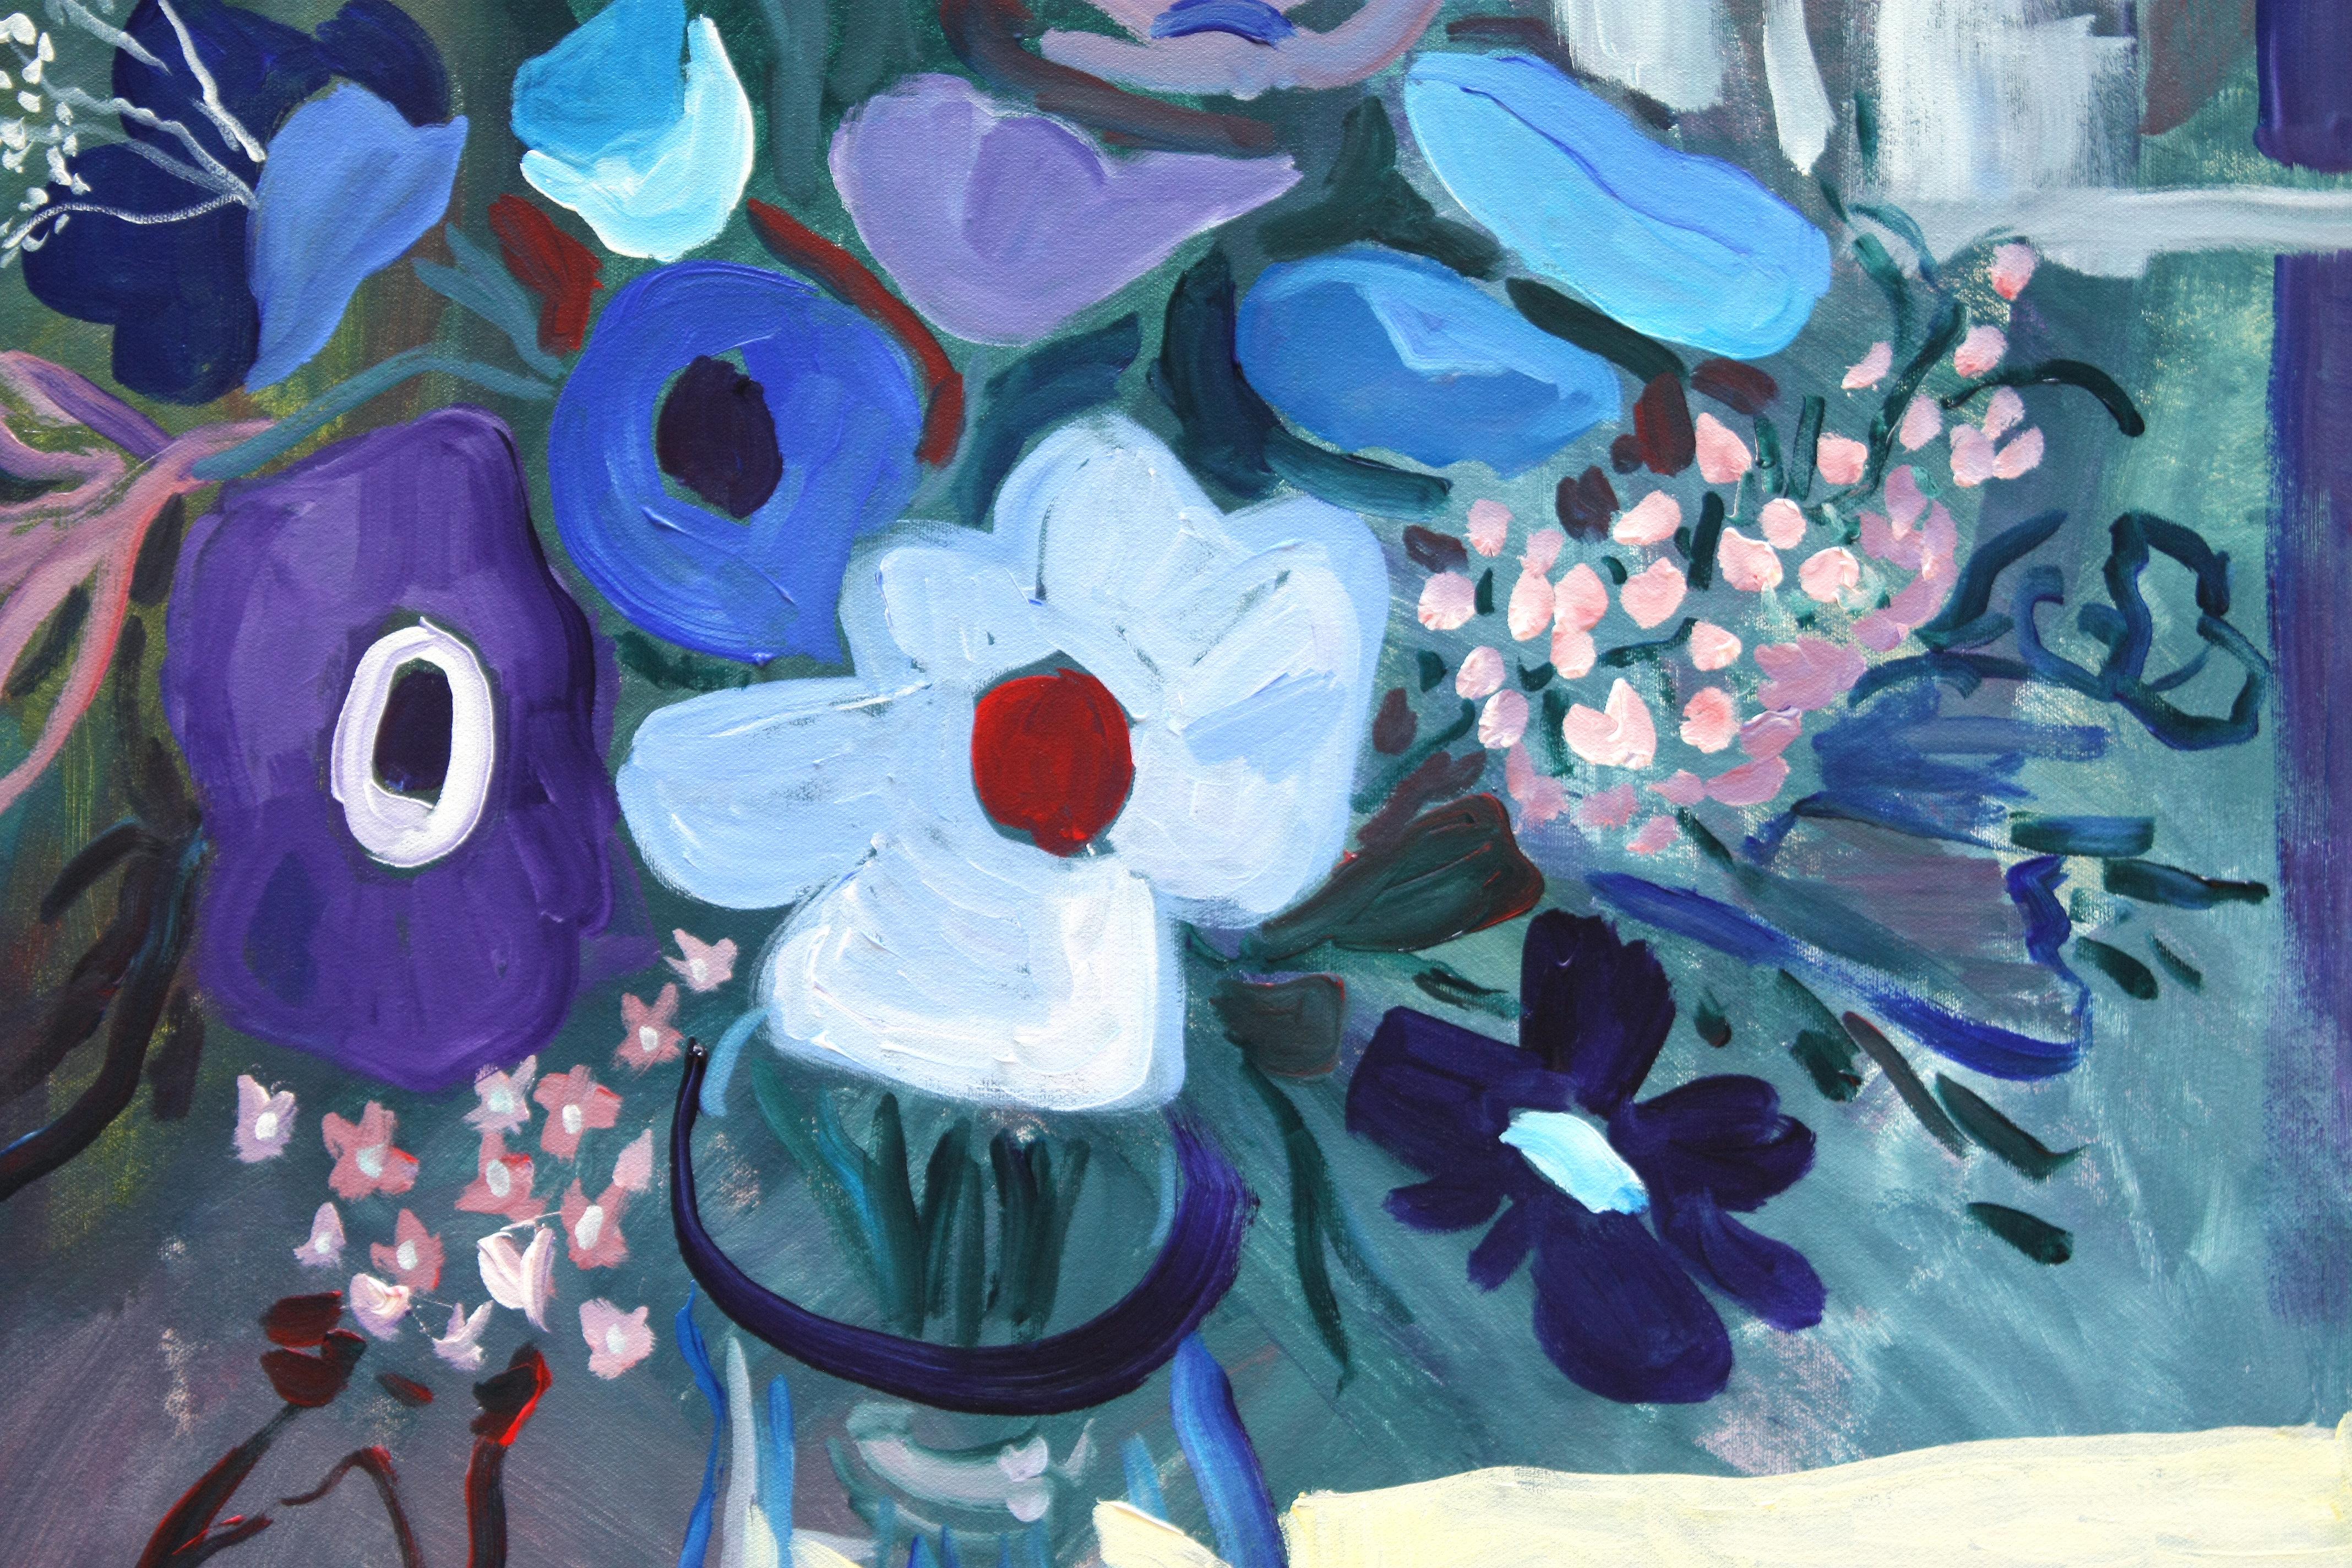 <p>Kommentare des Künstlers<br>Der Künstler Robert Hofherr zeigt ein expressionistisches Blumenstillleben in einer kühlen Farbpalette aus Blau und Violett. Er gibt die Blumen und Blätter schnell und sicher mit lebhaftem Pinselstrich wieder. 